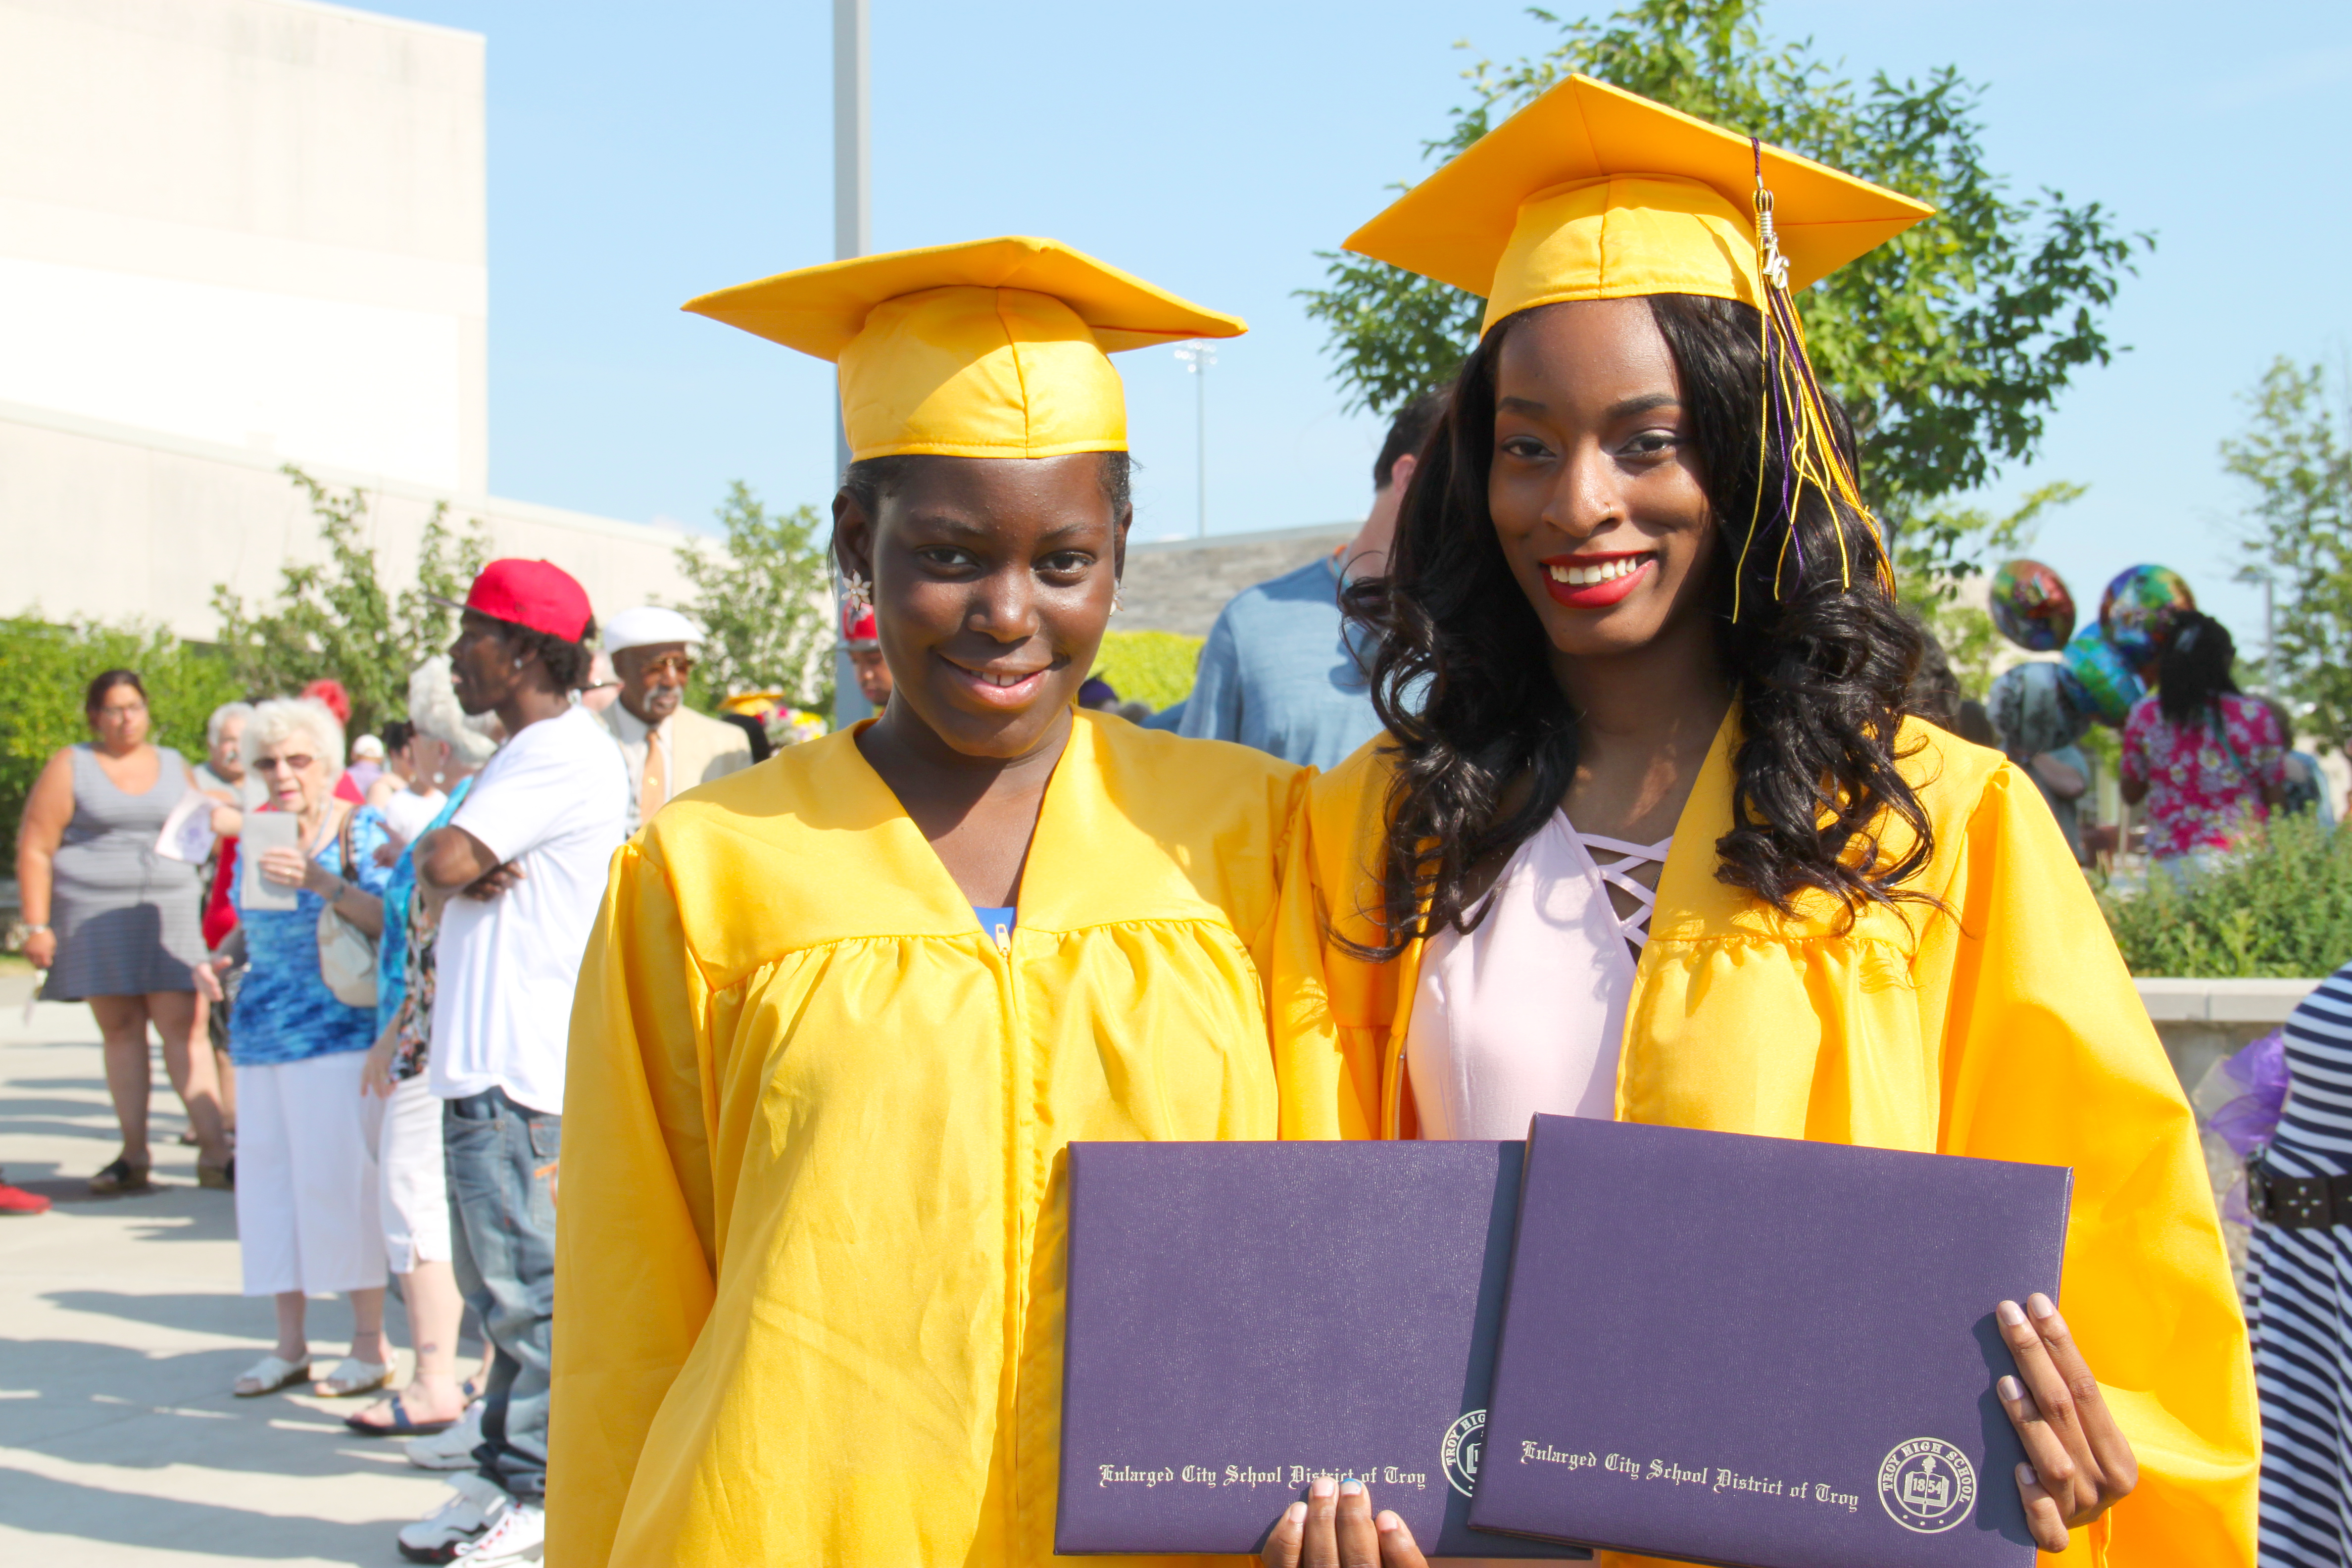 Troy High School Graduation Rates rise, achievement gap closes